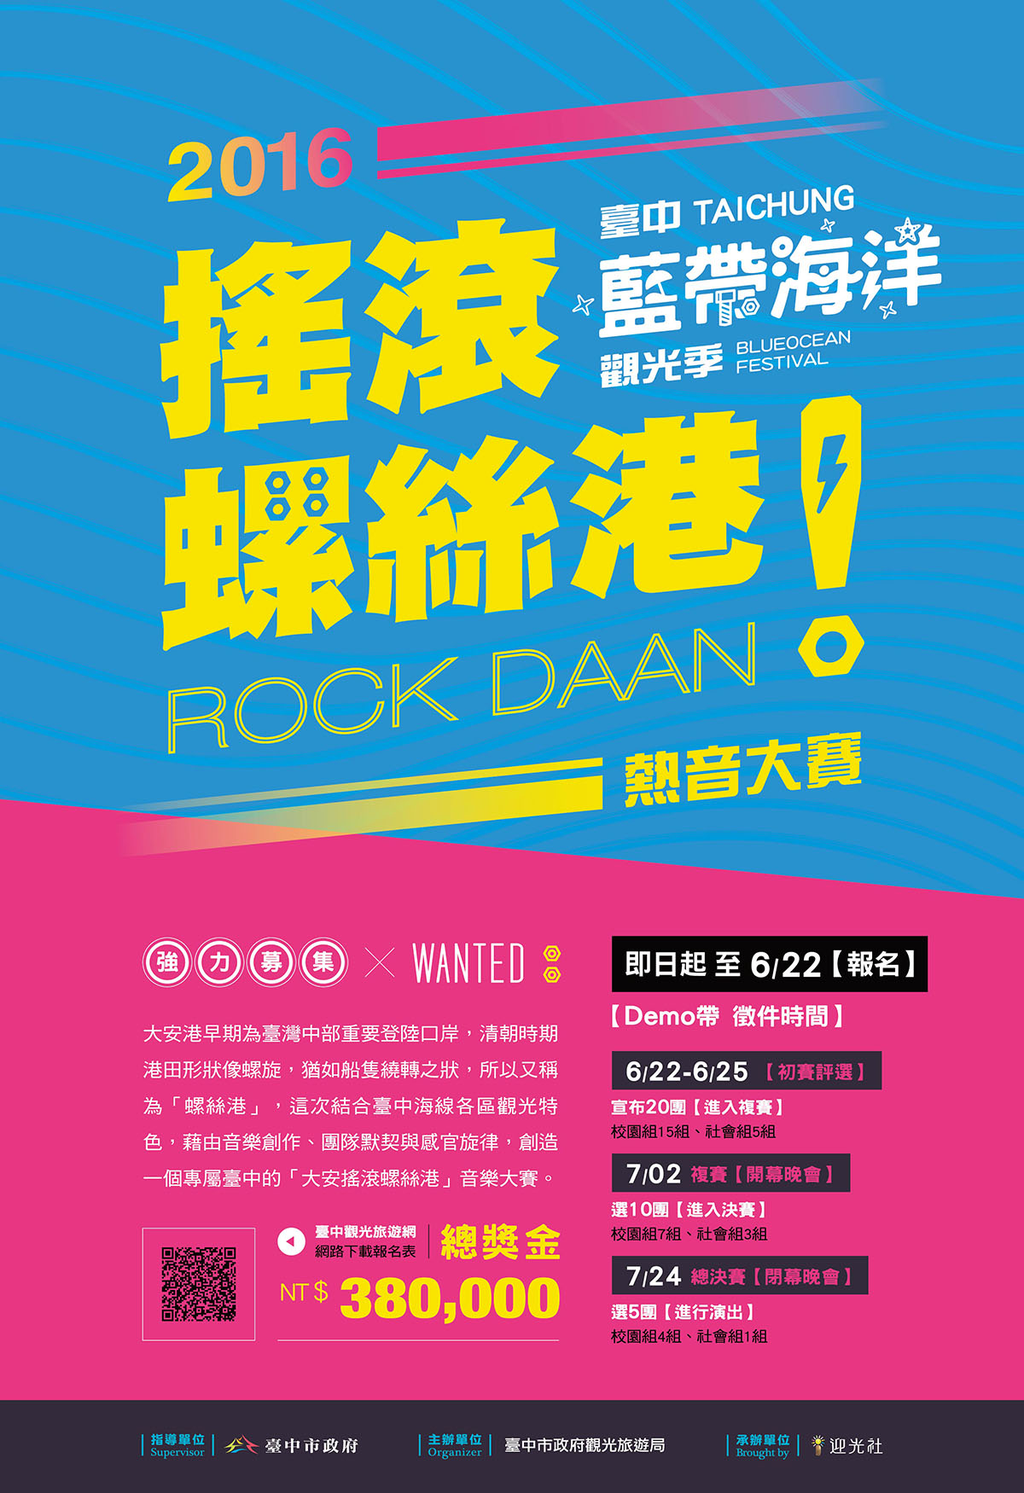 16搖滾螺絲港rock Daan熱音大賽 即日起開始報名囉 臺中觀光旅遊網taichung Tourism